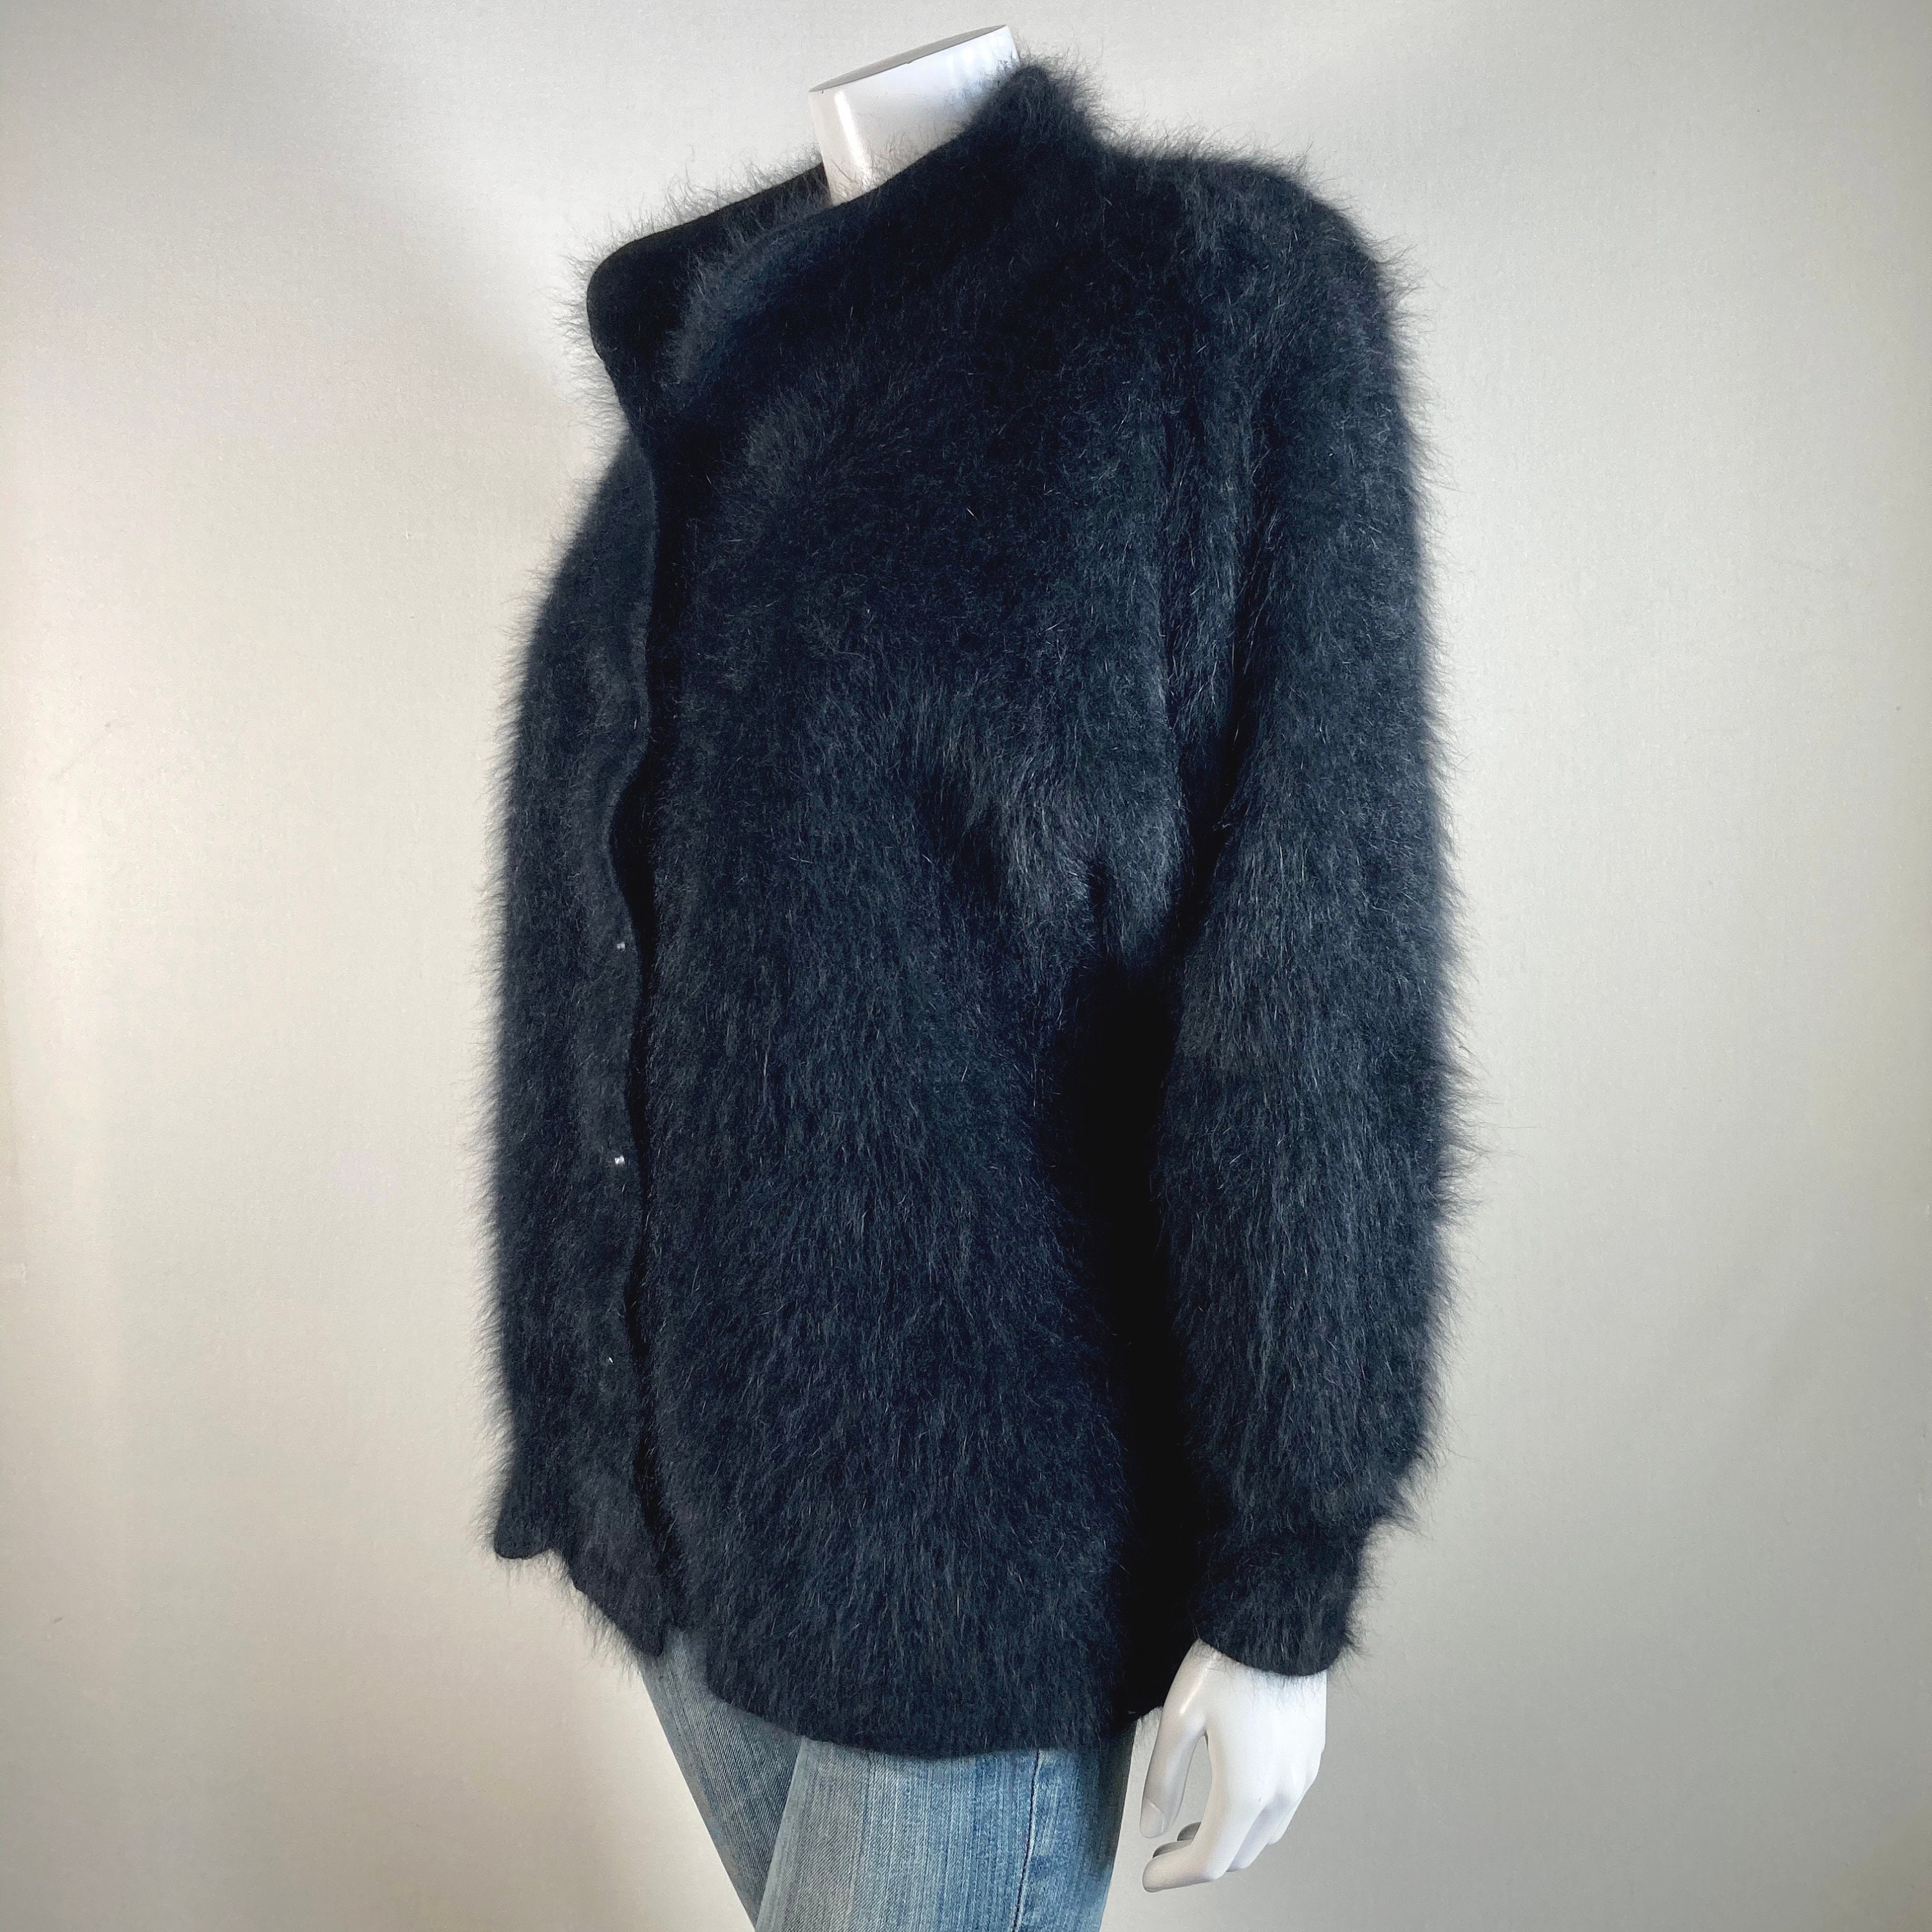 Fuzzy 80% Angora Vintage VENESHA Black Lined Sweater Jacket | Etsy